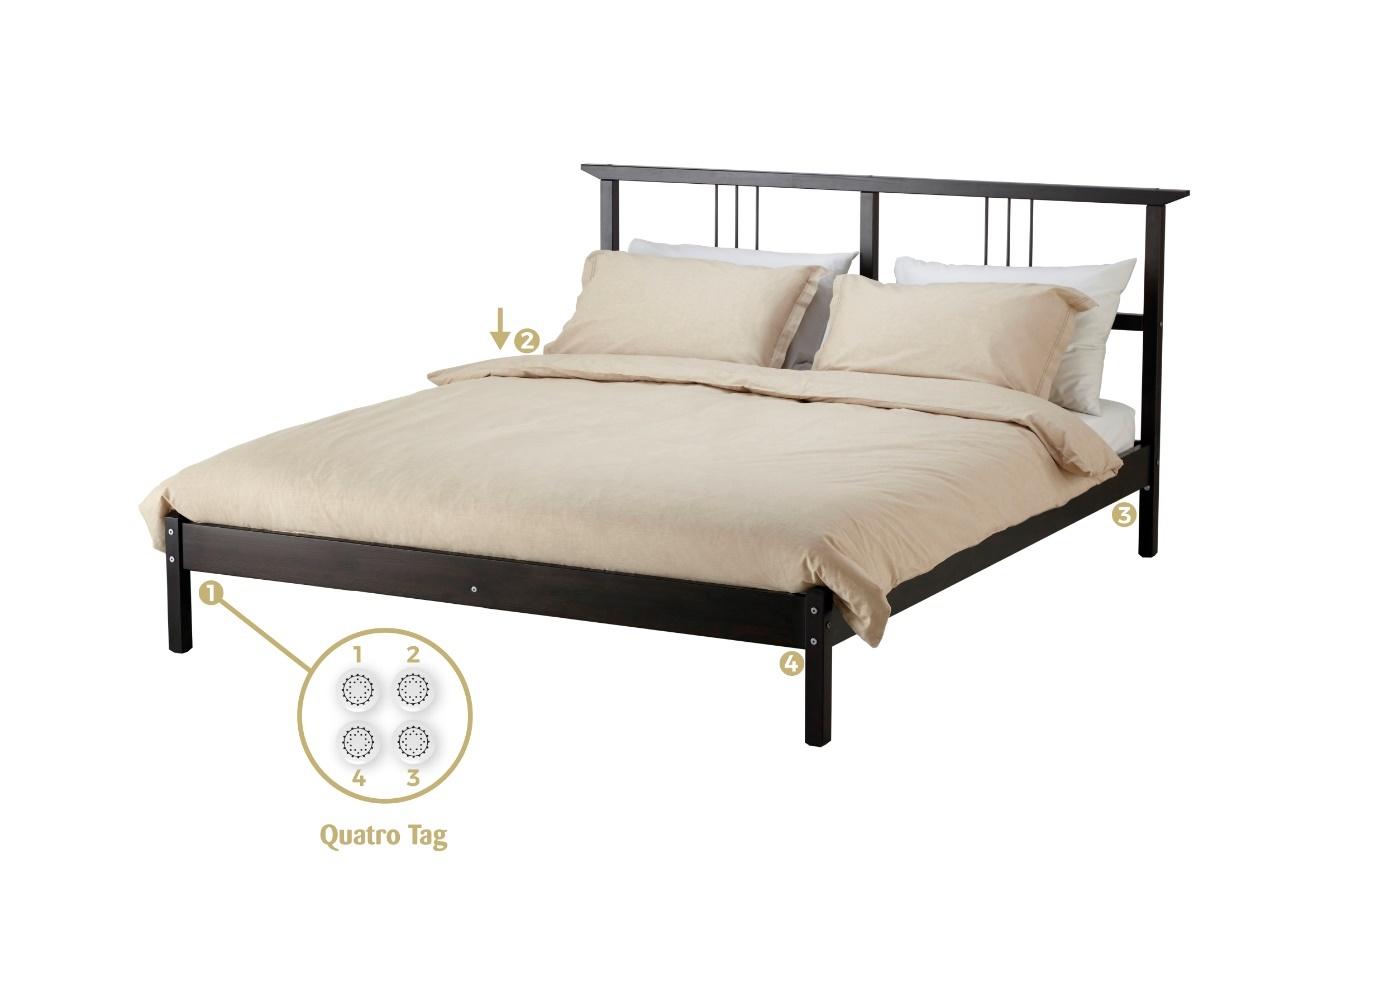 Afbeelding met meubels, bed, Bedframe, lakens

Automatisch gegenereerde beschrijving